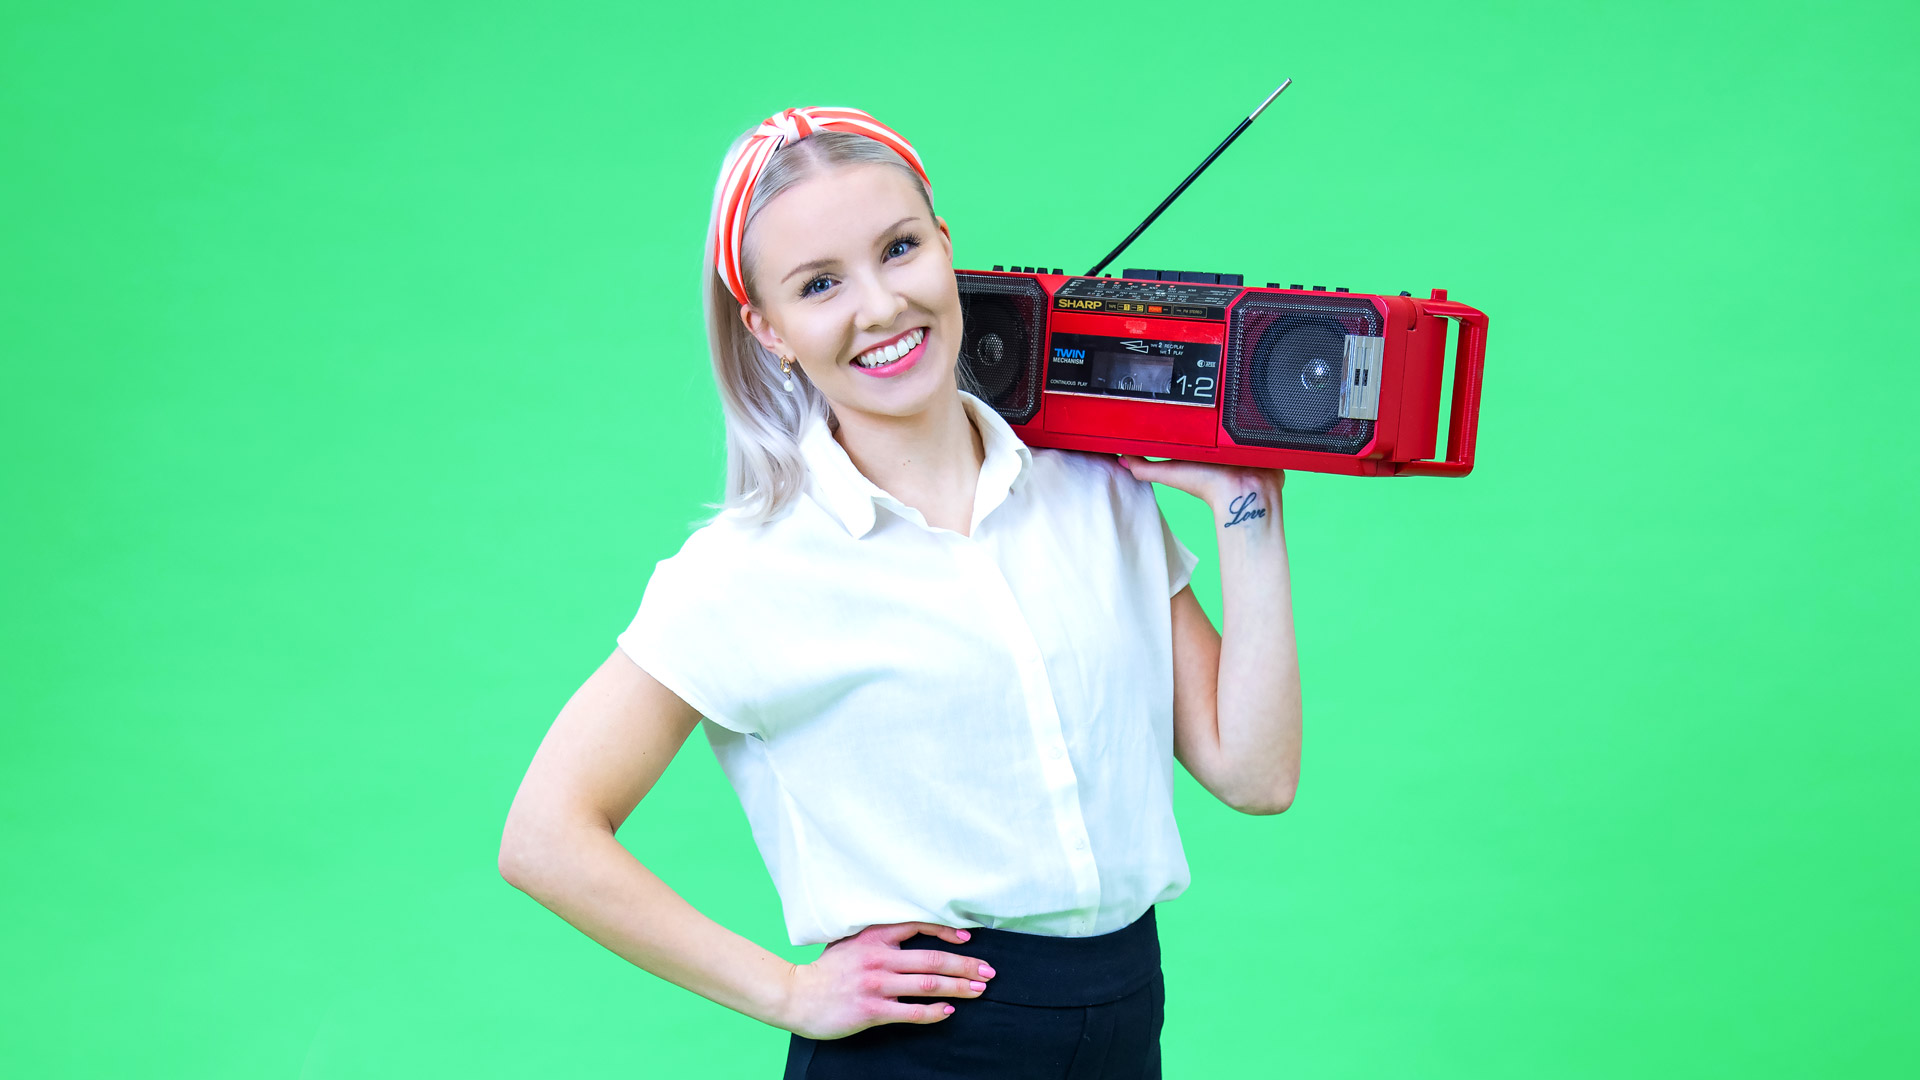 Lakeuden osuuspankki header-kuva, jossa vaalea nainen ja käsissään punainen radio.